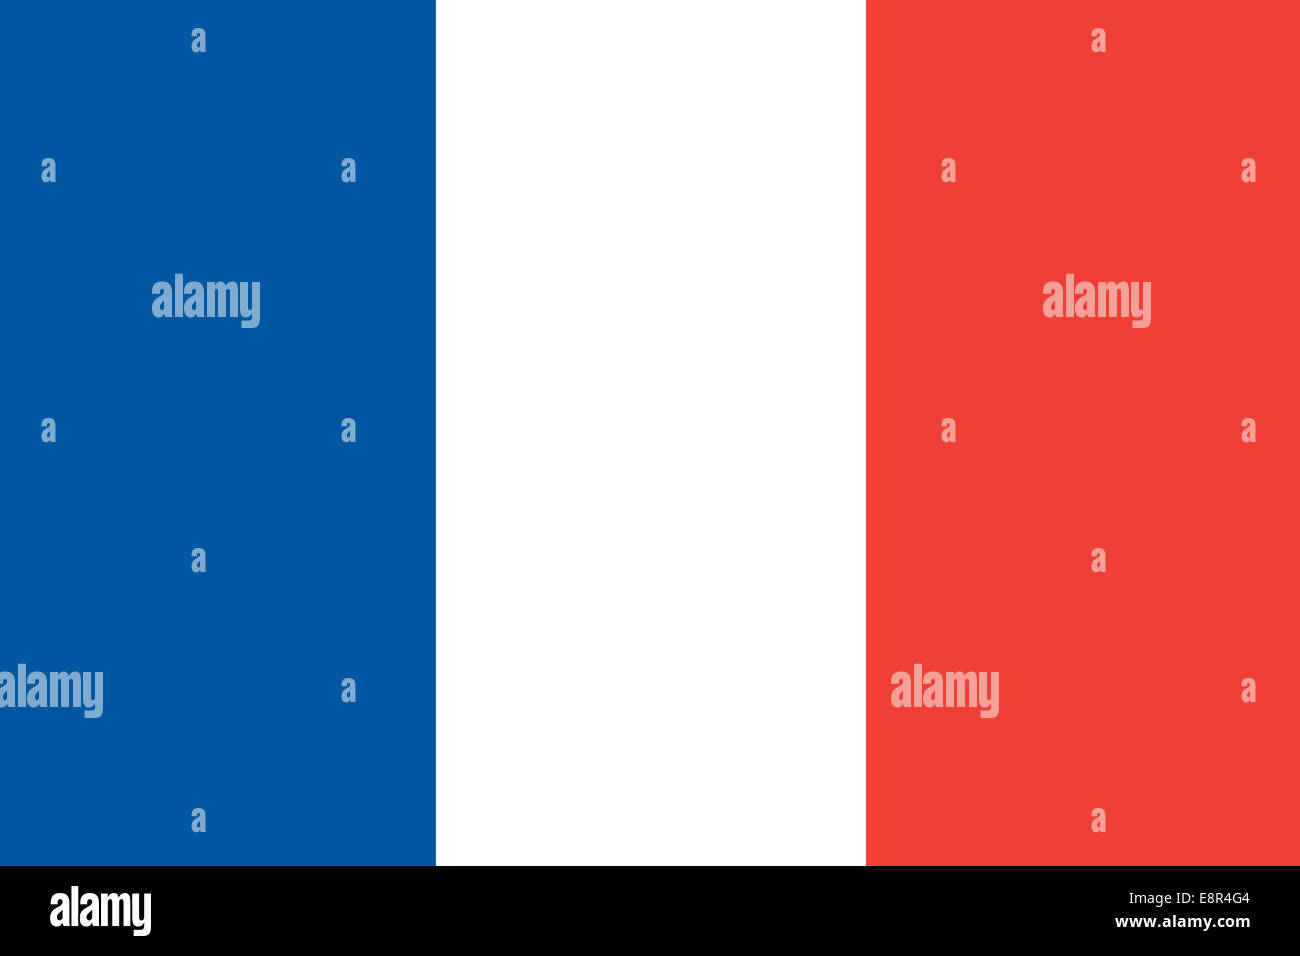 Drapeau de France - Rapport standard drapeau français - mode couleur RVB réel Banque D'Images